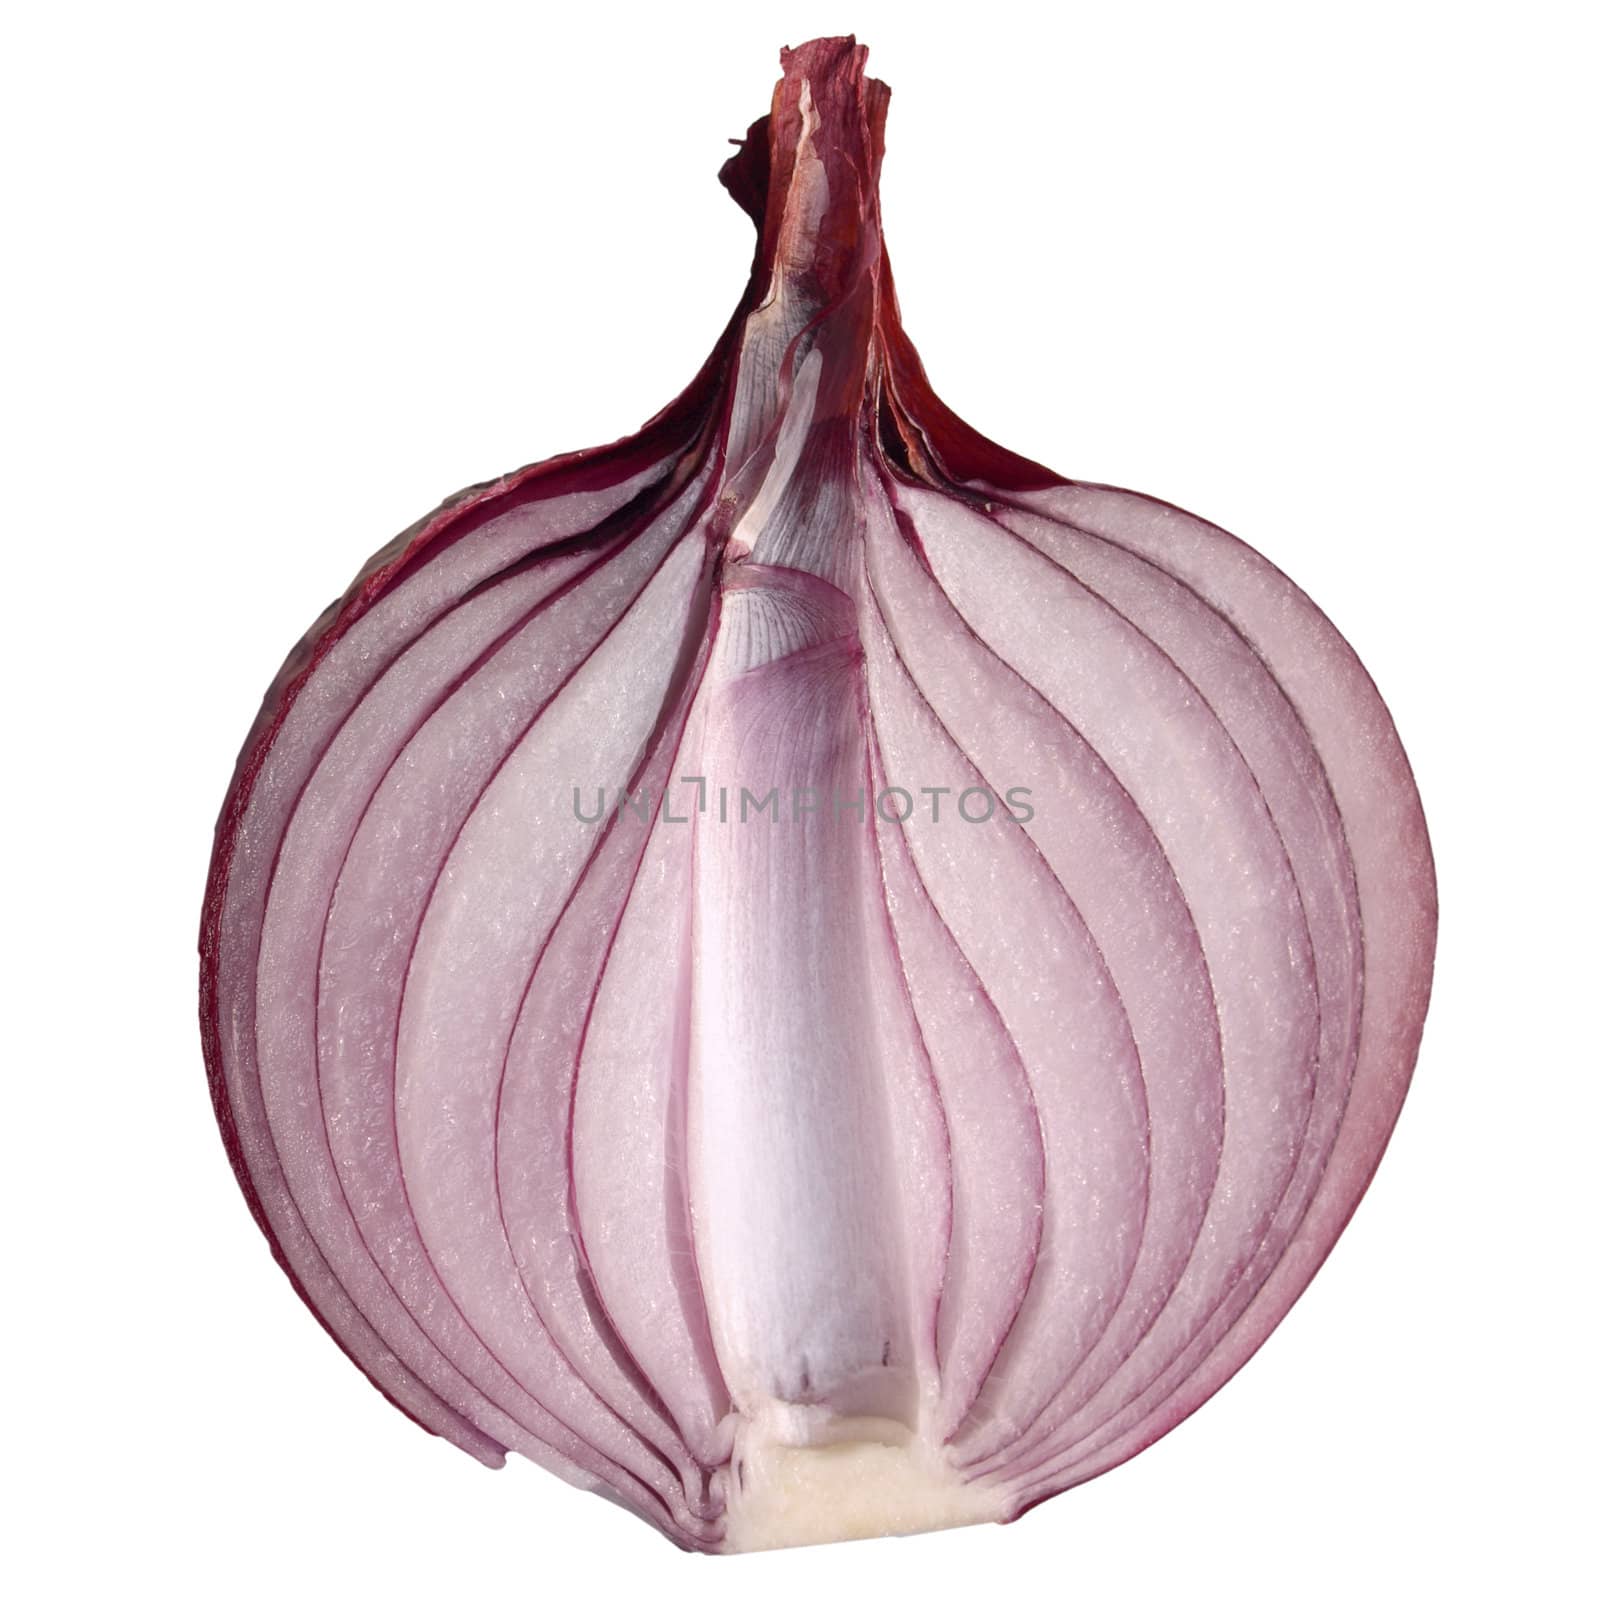 Onion by claudiodivizia